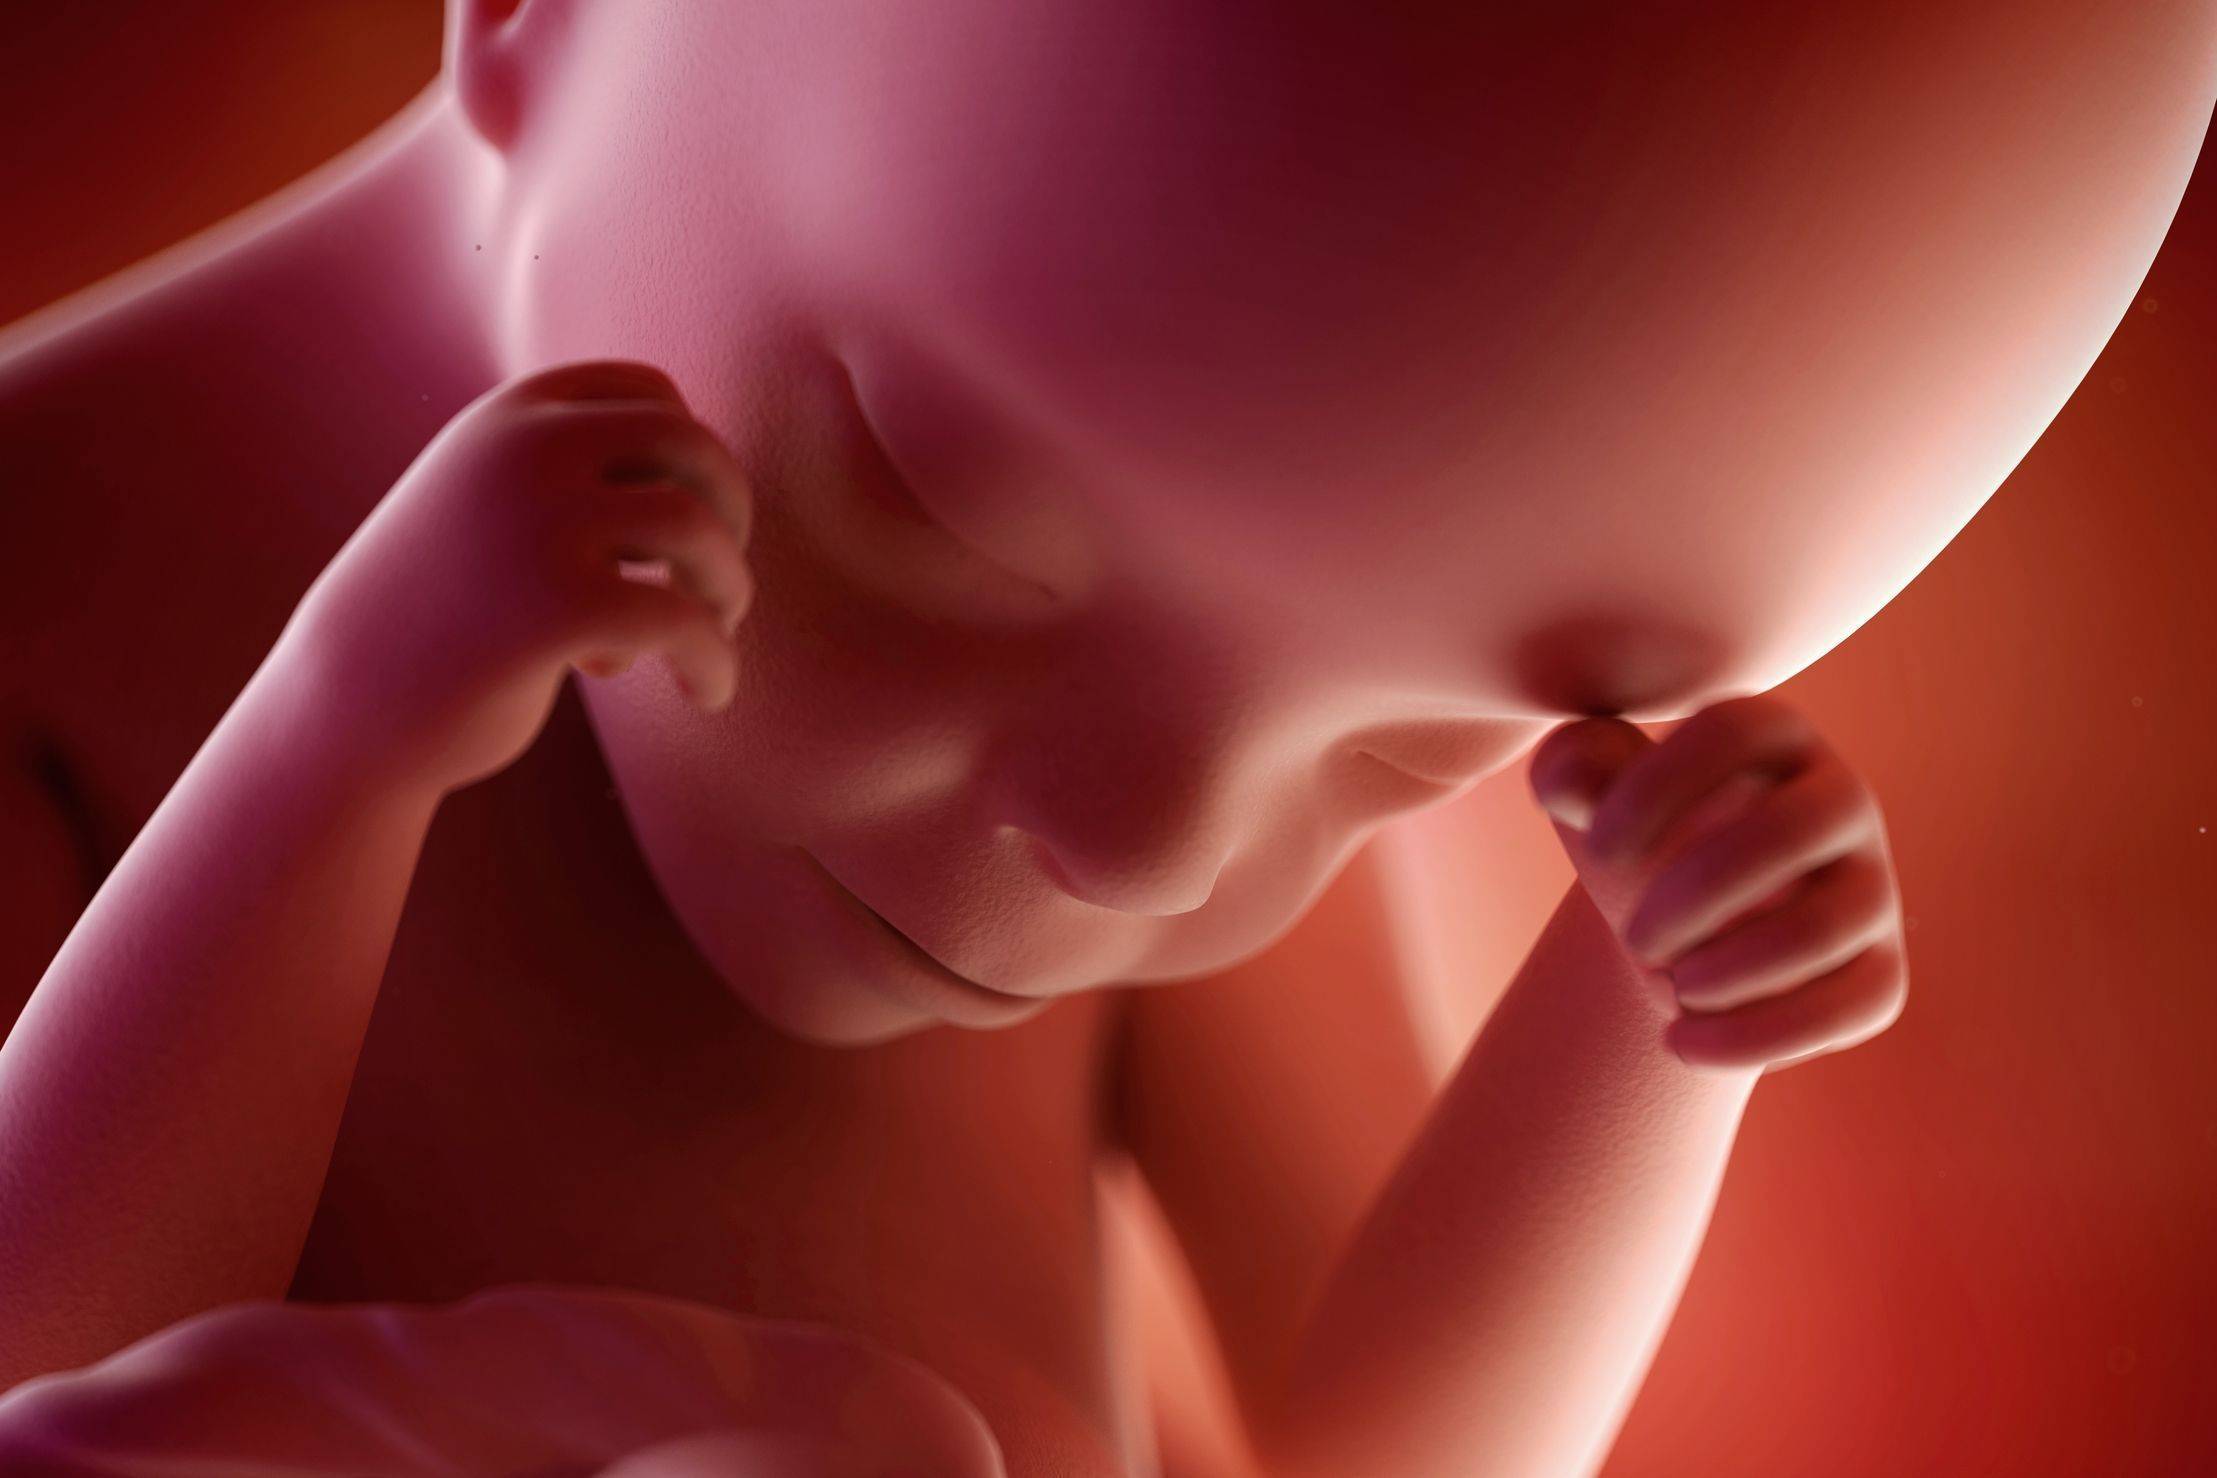 24 неделя беременности: что происходит с малышом и мамой, развитие плода